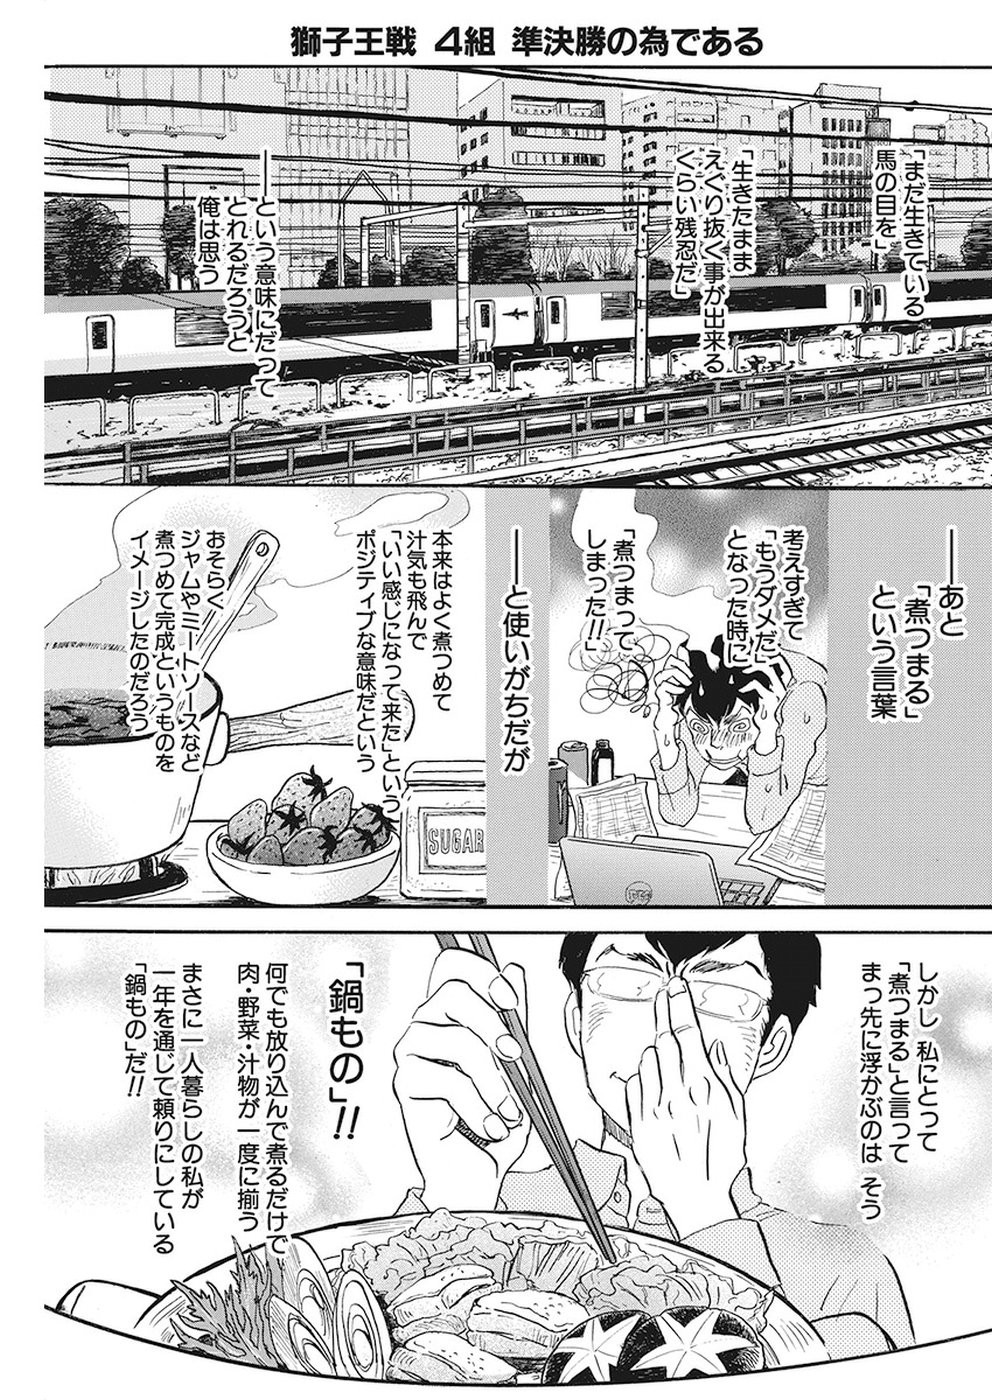 3 Gatsu No Lion Chapter 156 Page 3 Raw Manga 生漫画